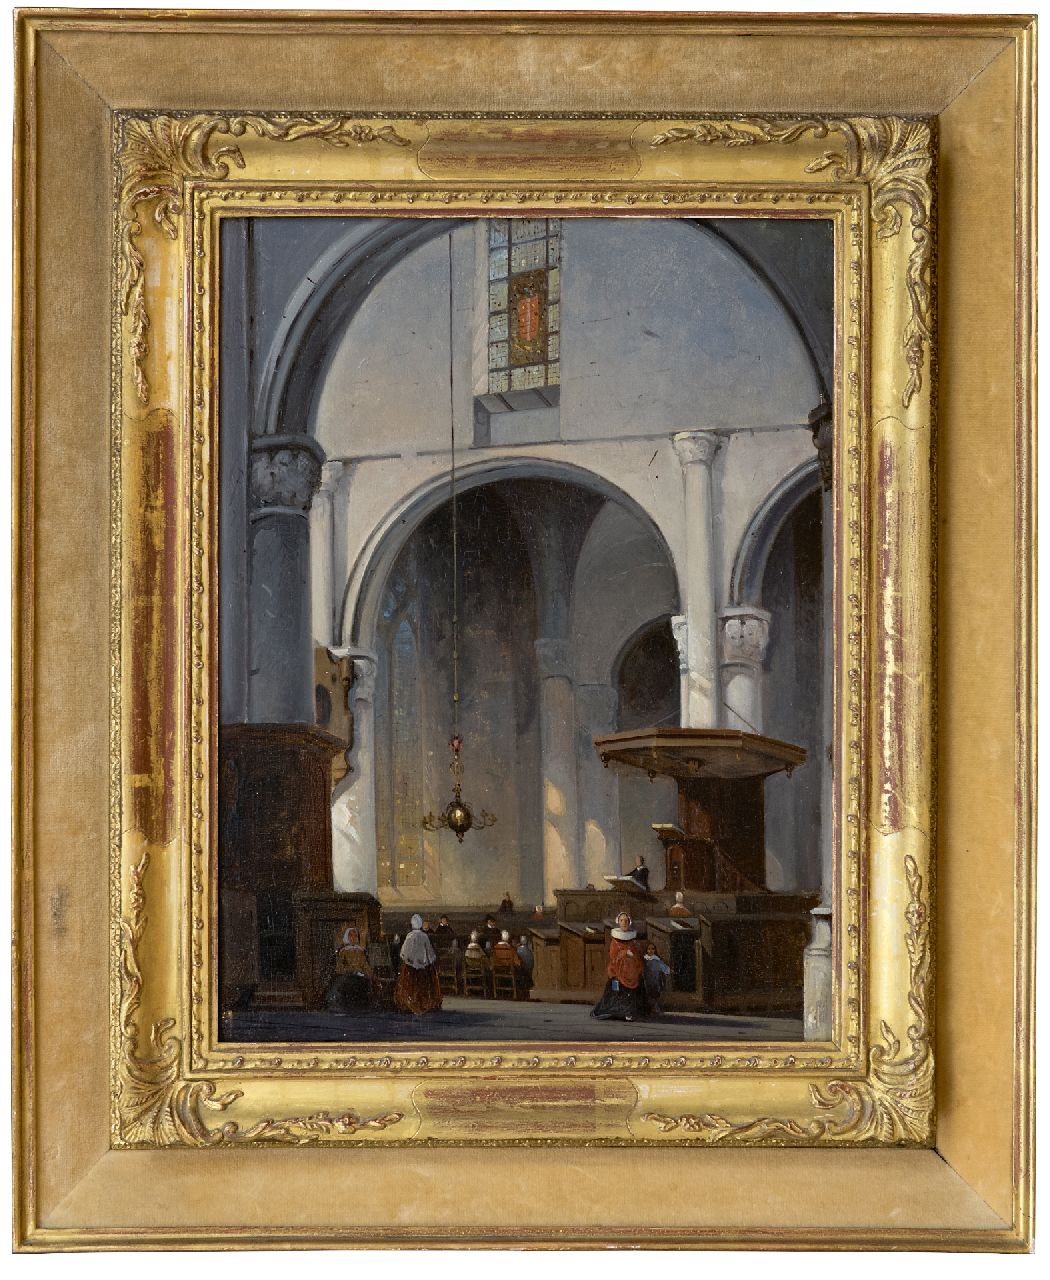 Laar J.H. van de | Jan Hendrik van de Laar | Paintings offered for sale | Church interior, oil on panel 36.9 x 27.9 cm